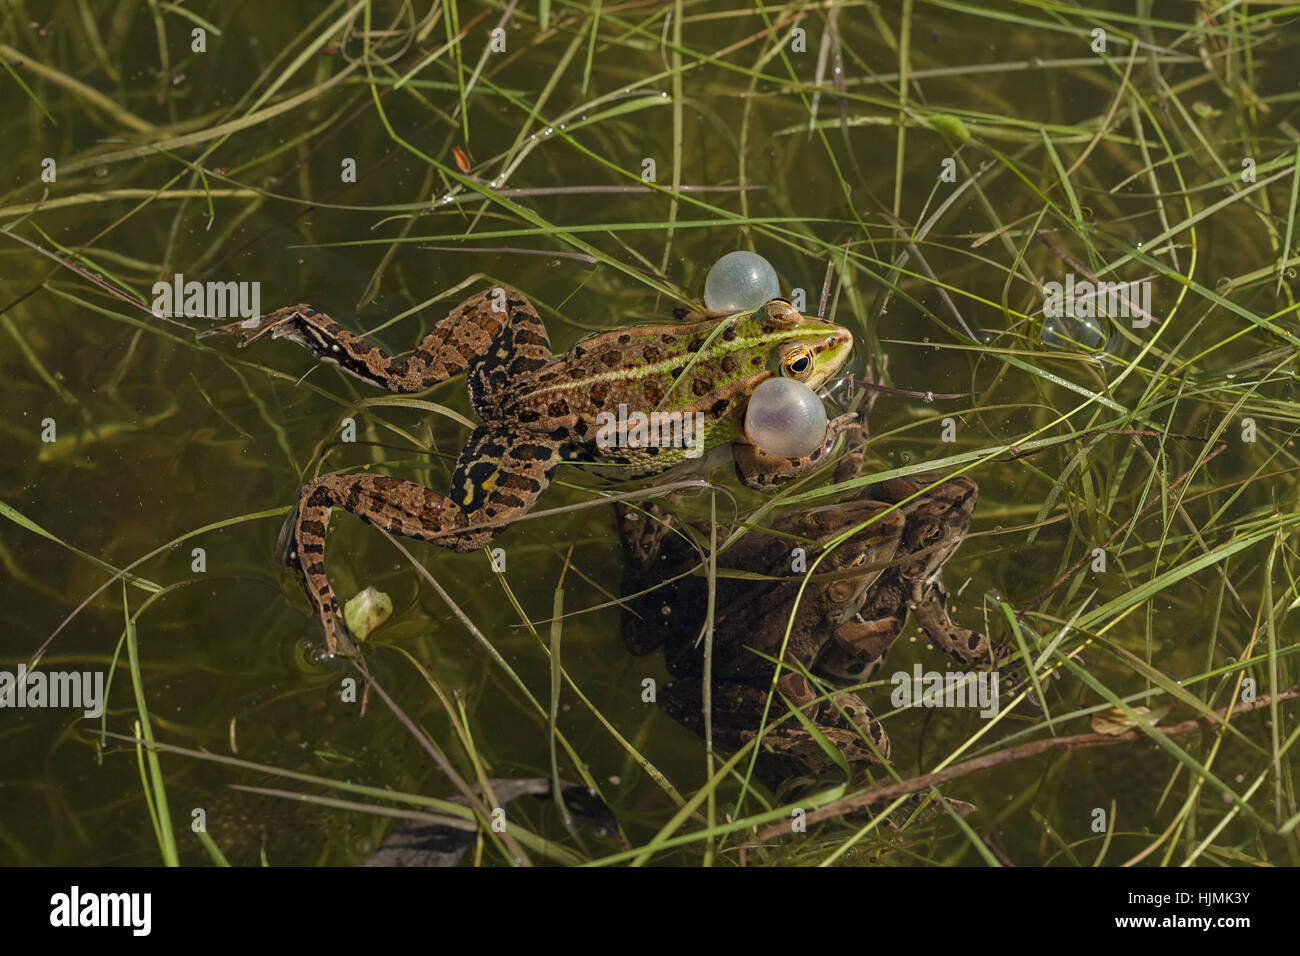 Hombres ranas verdes con sacos vocales en las esquinas de la mandíbula, la profundidad de campo de nota Foto de stock